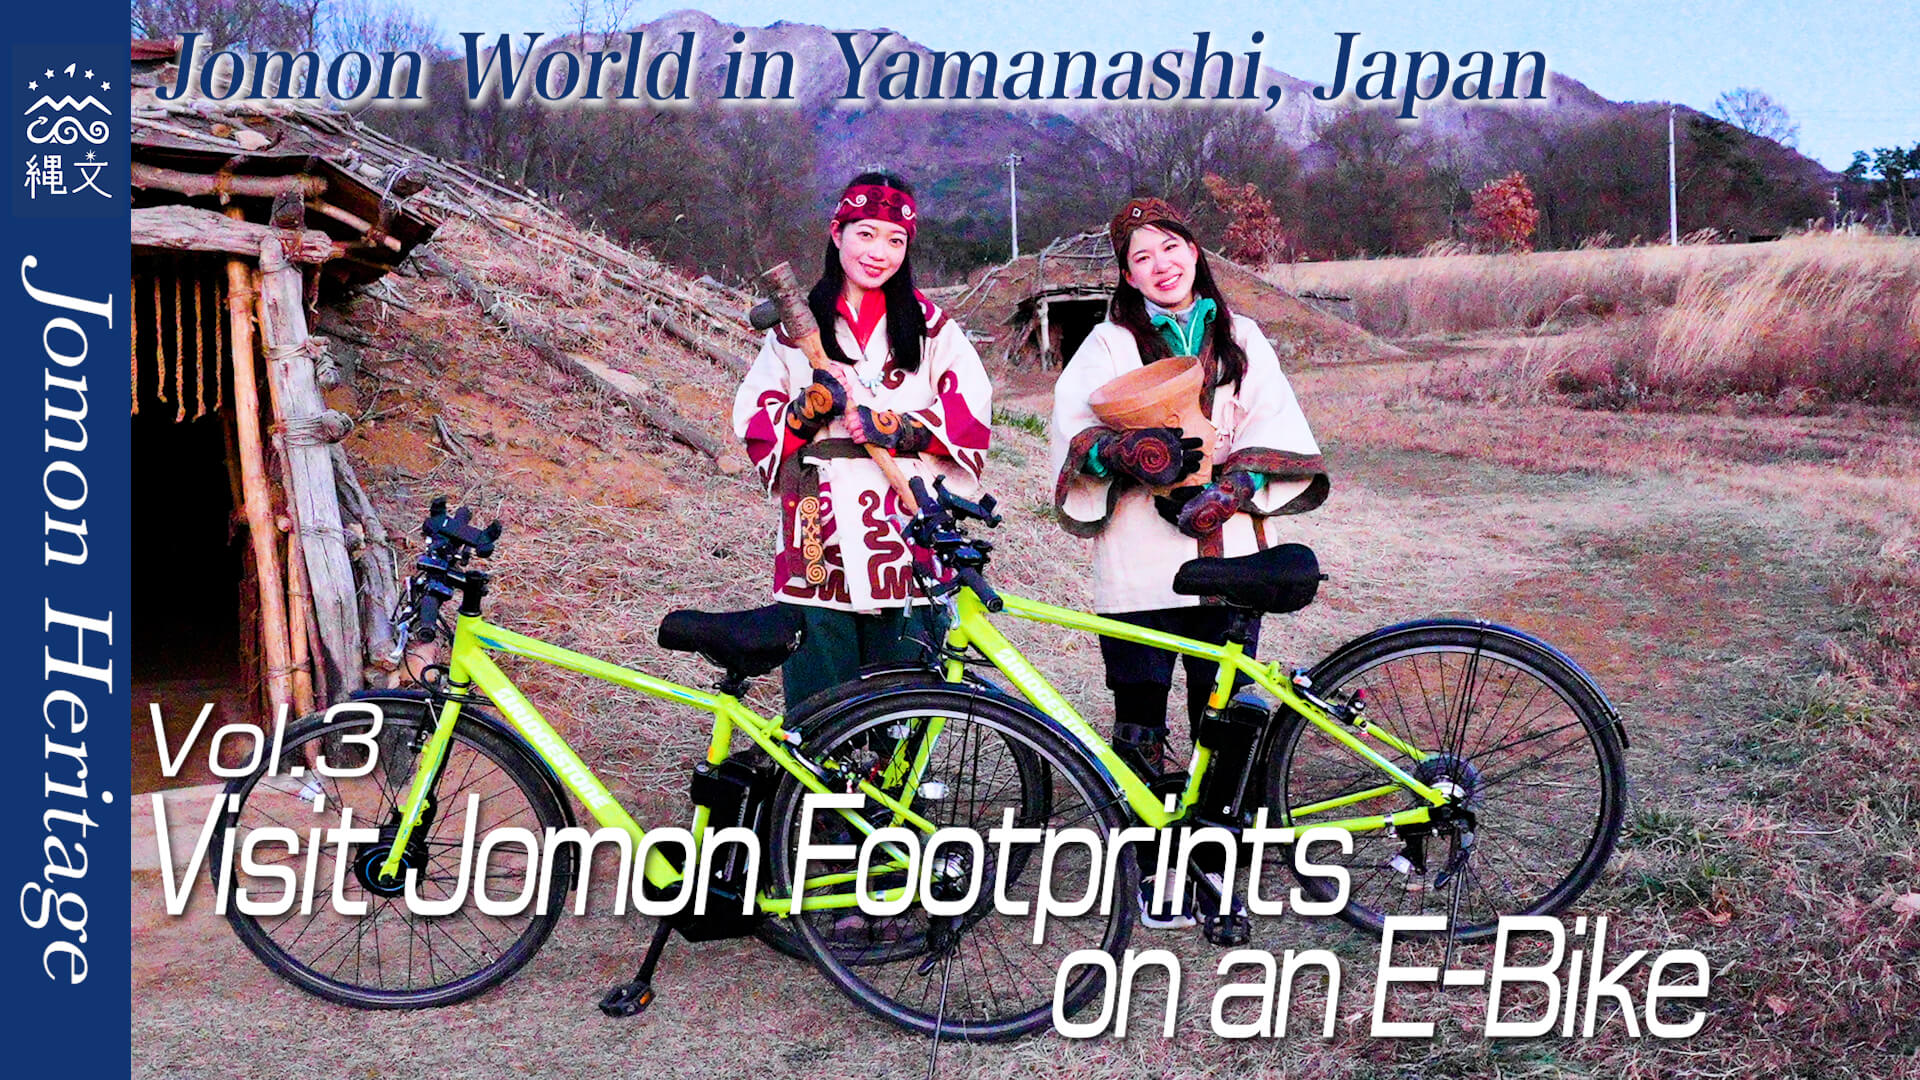 Vol.3 Visit Jomon Footprints on an E-Bike